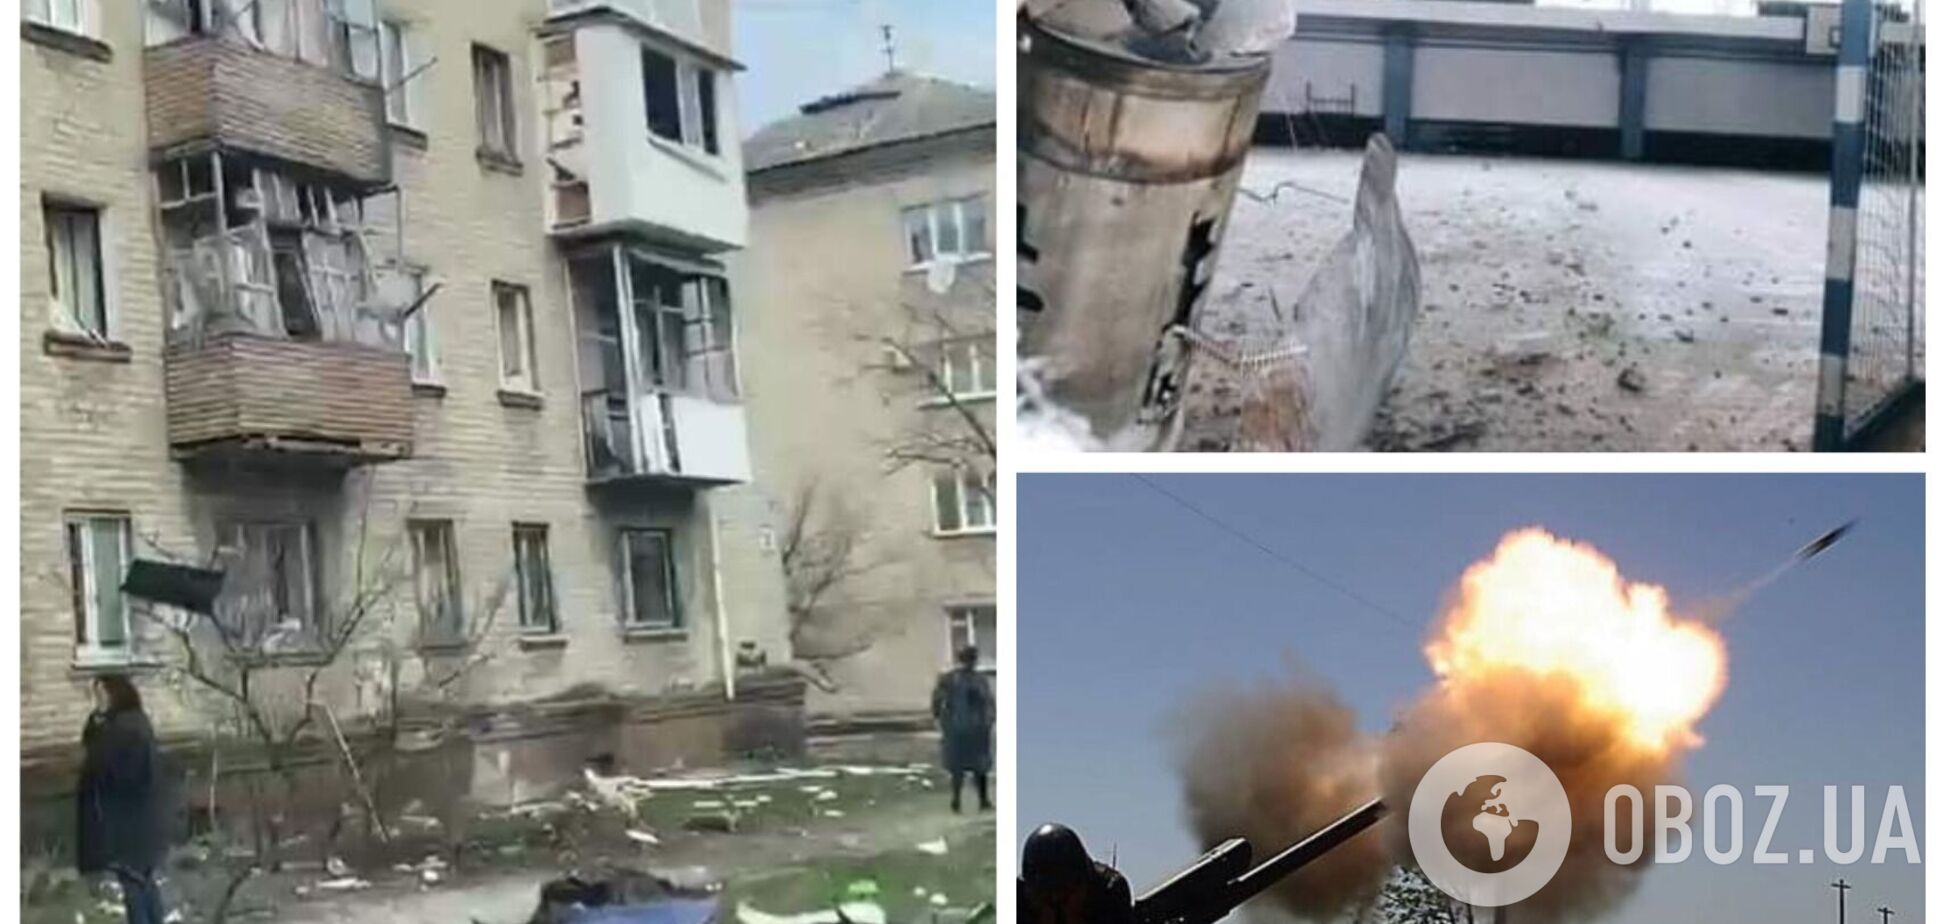 Оккупанты обстреляли школу и многоэтажки в Северодонецке, вспыхнули пожары. Фото